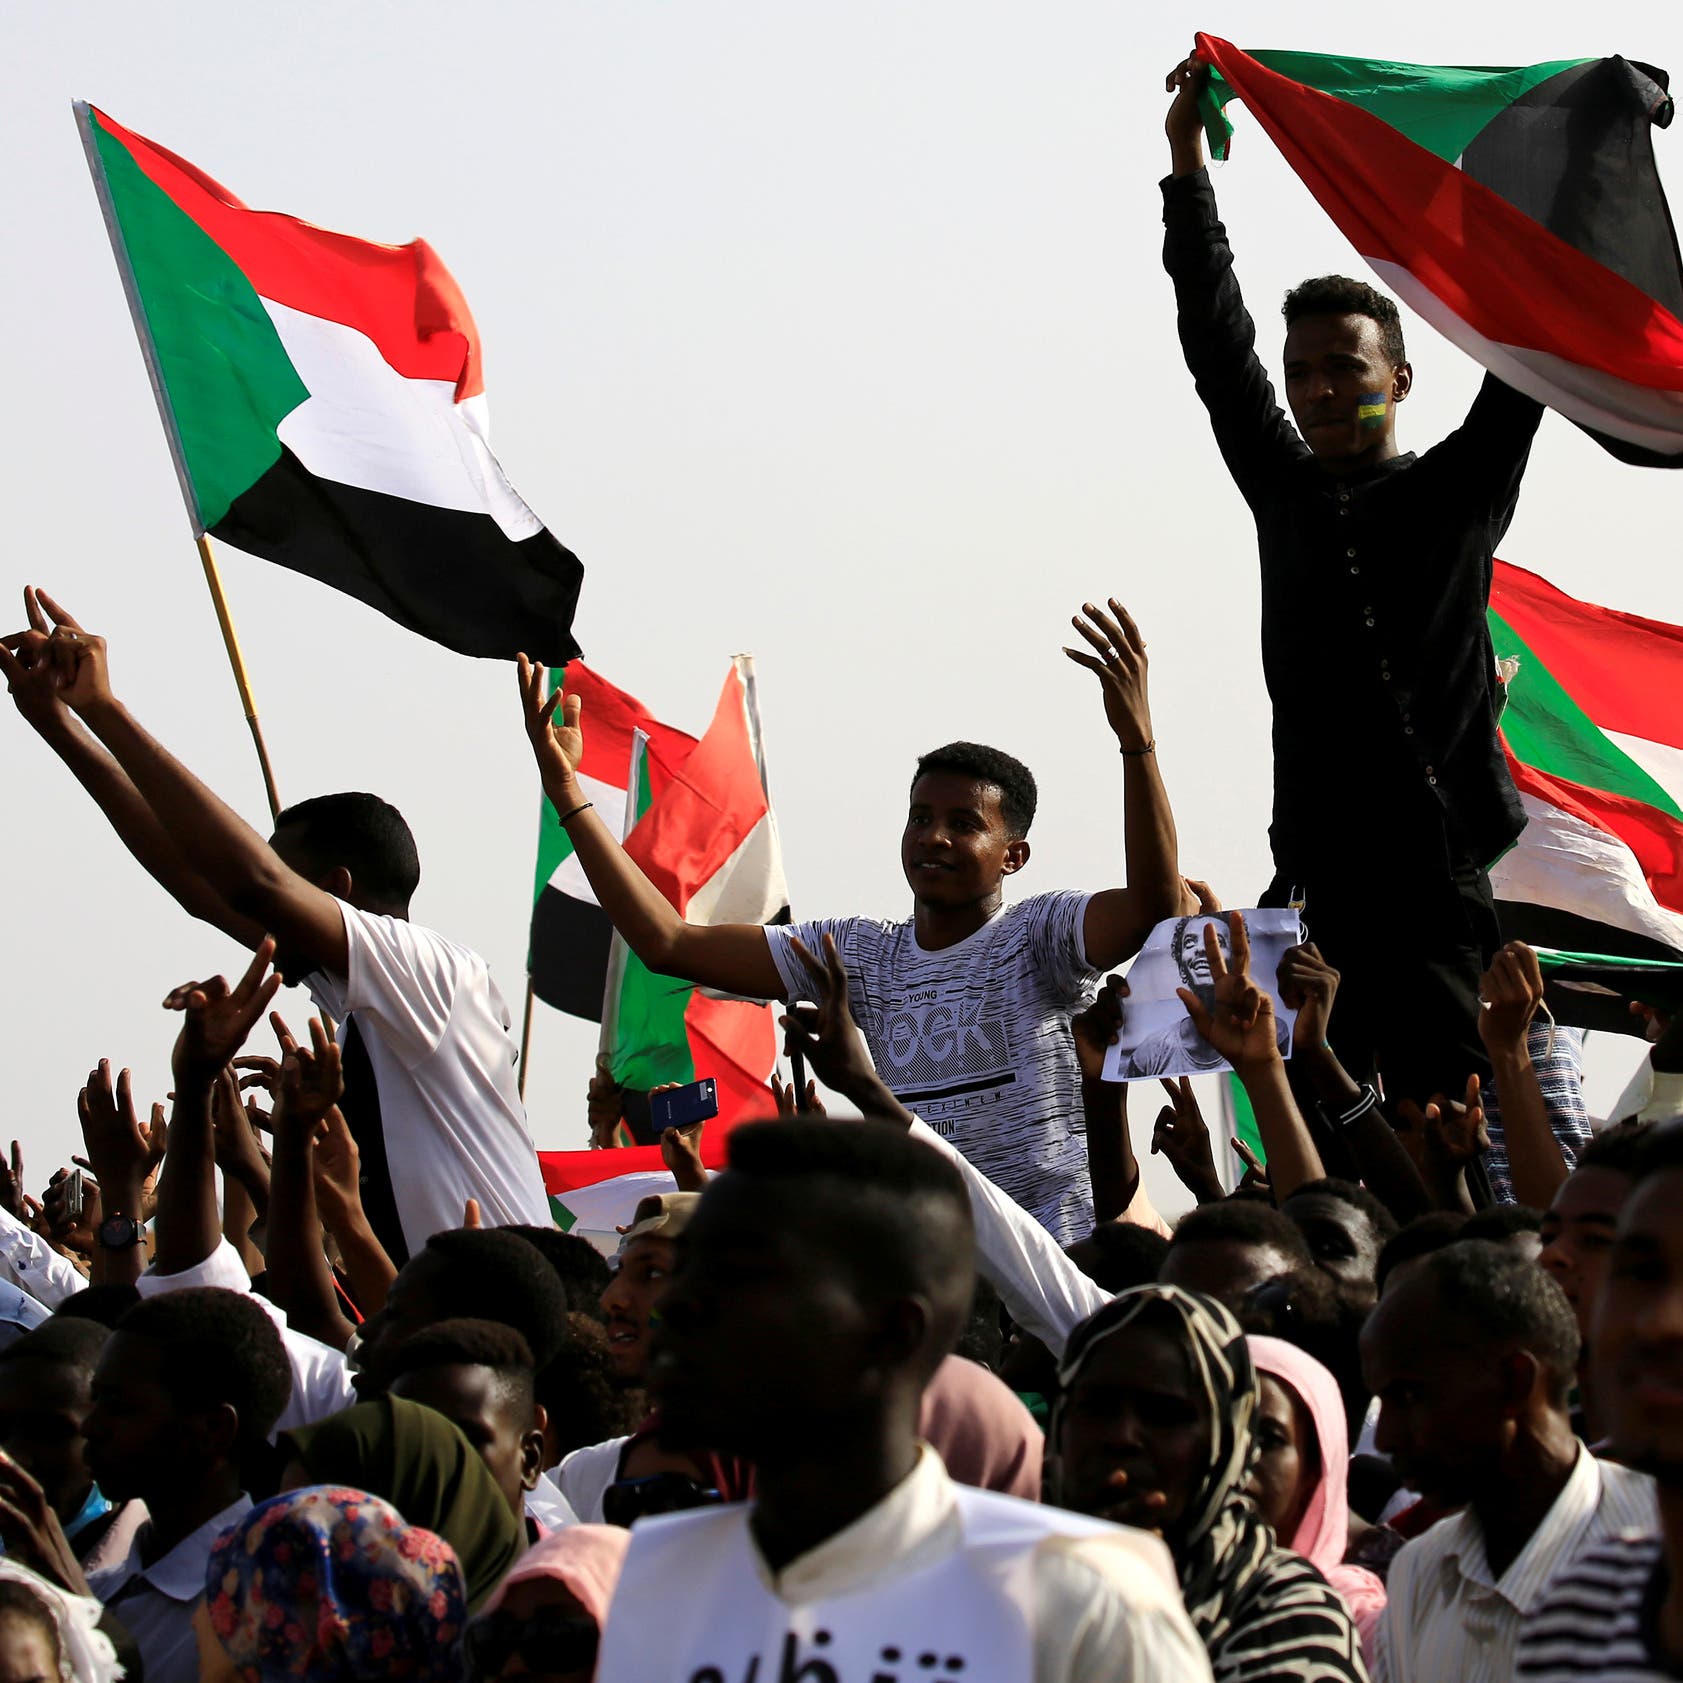 "التغيير" السودانية: محاولات لاختراق المتظاهرين بعناصر مسلحة